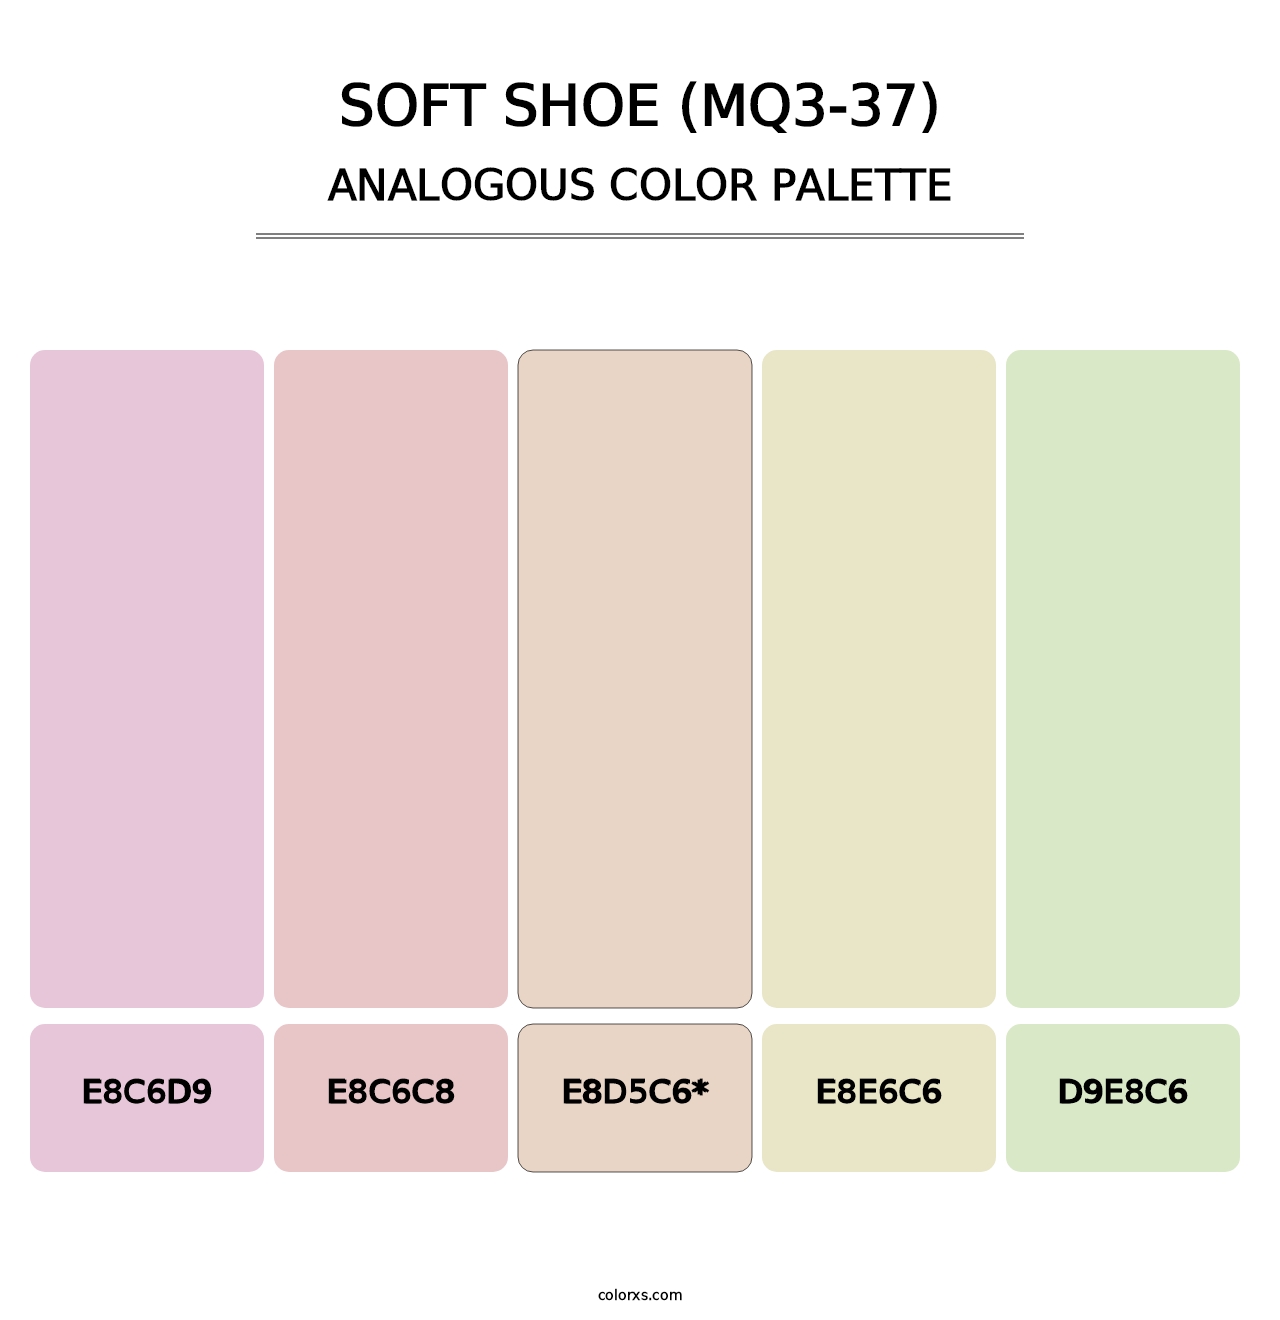 Soft Shoe (MQ3-37) - Analogous Color Palette